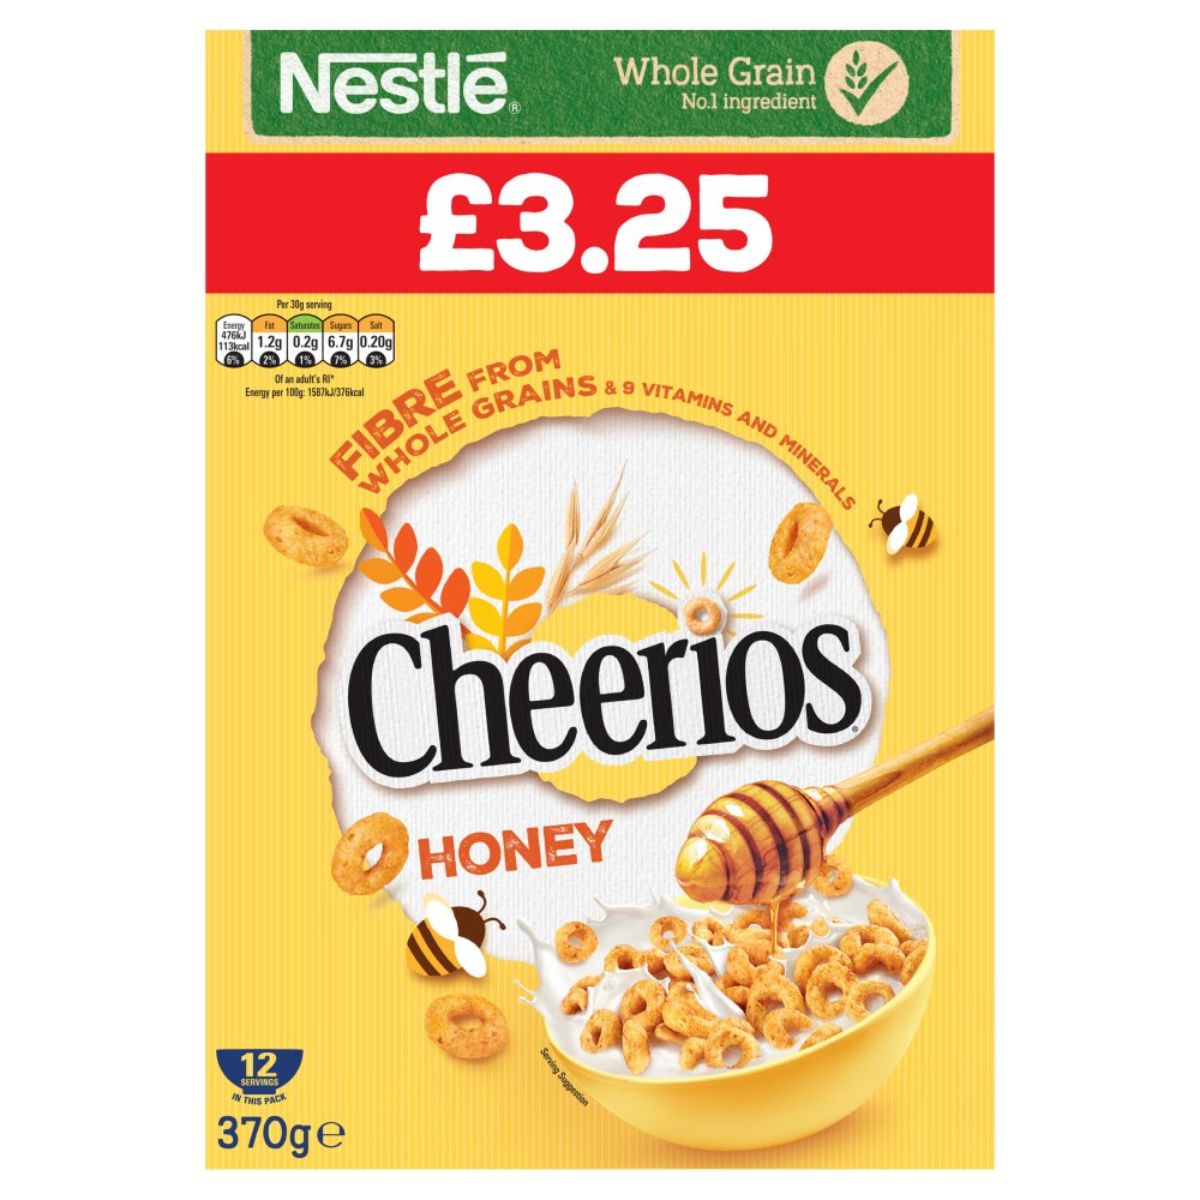 Nestle Cheerios Honey Cereal - 370g box.